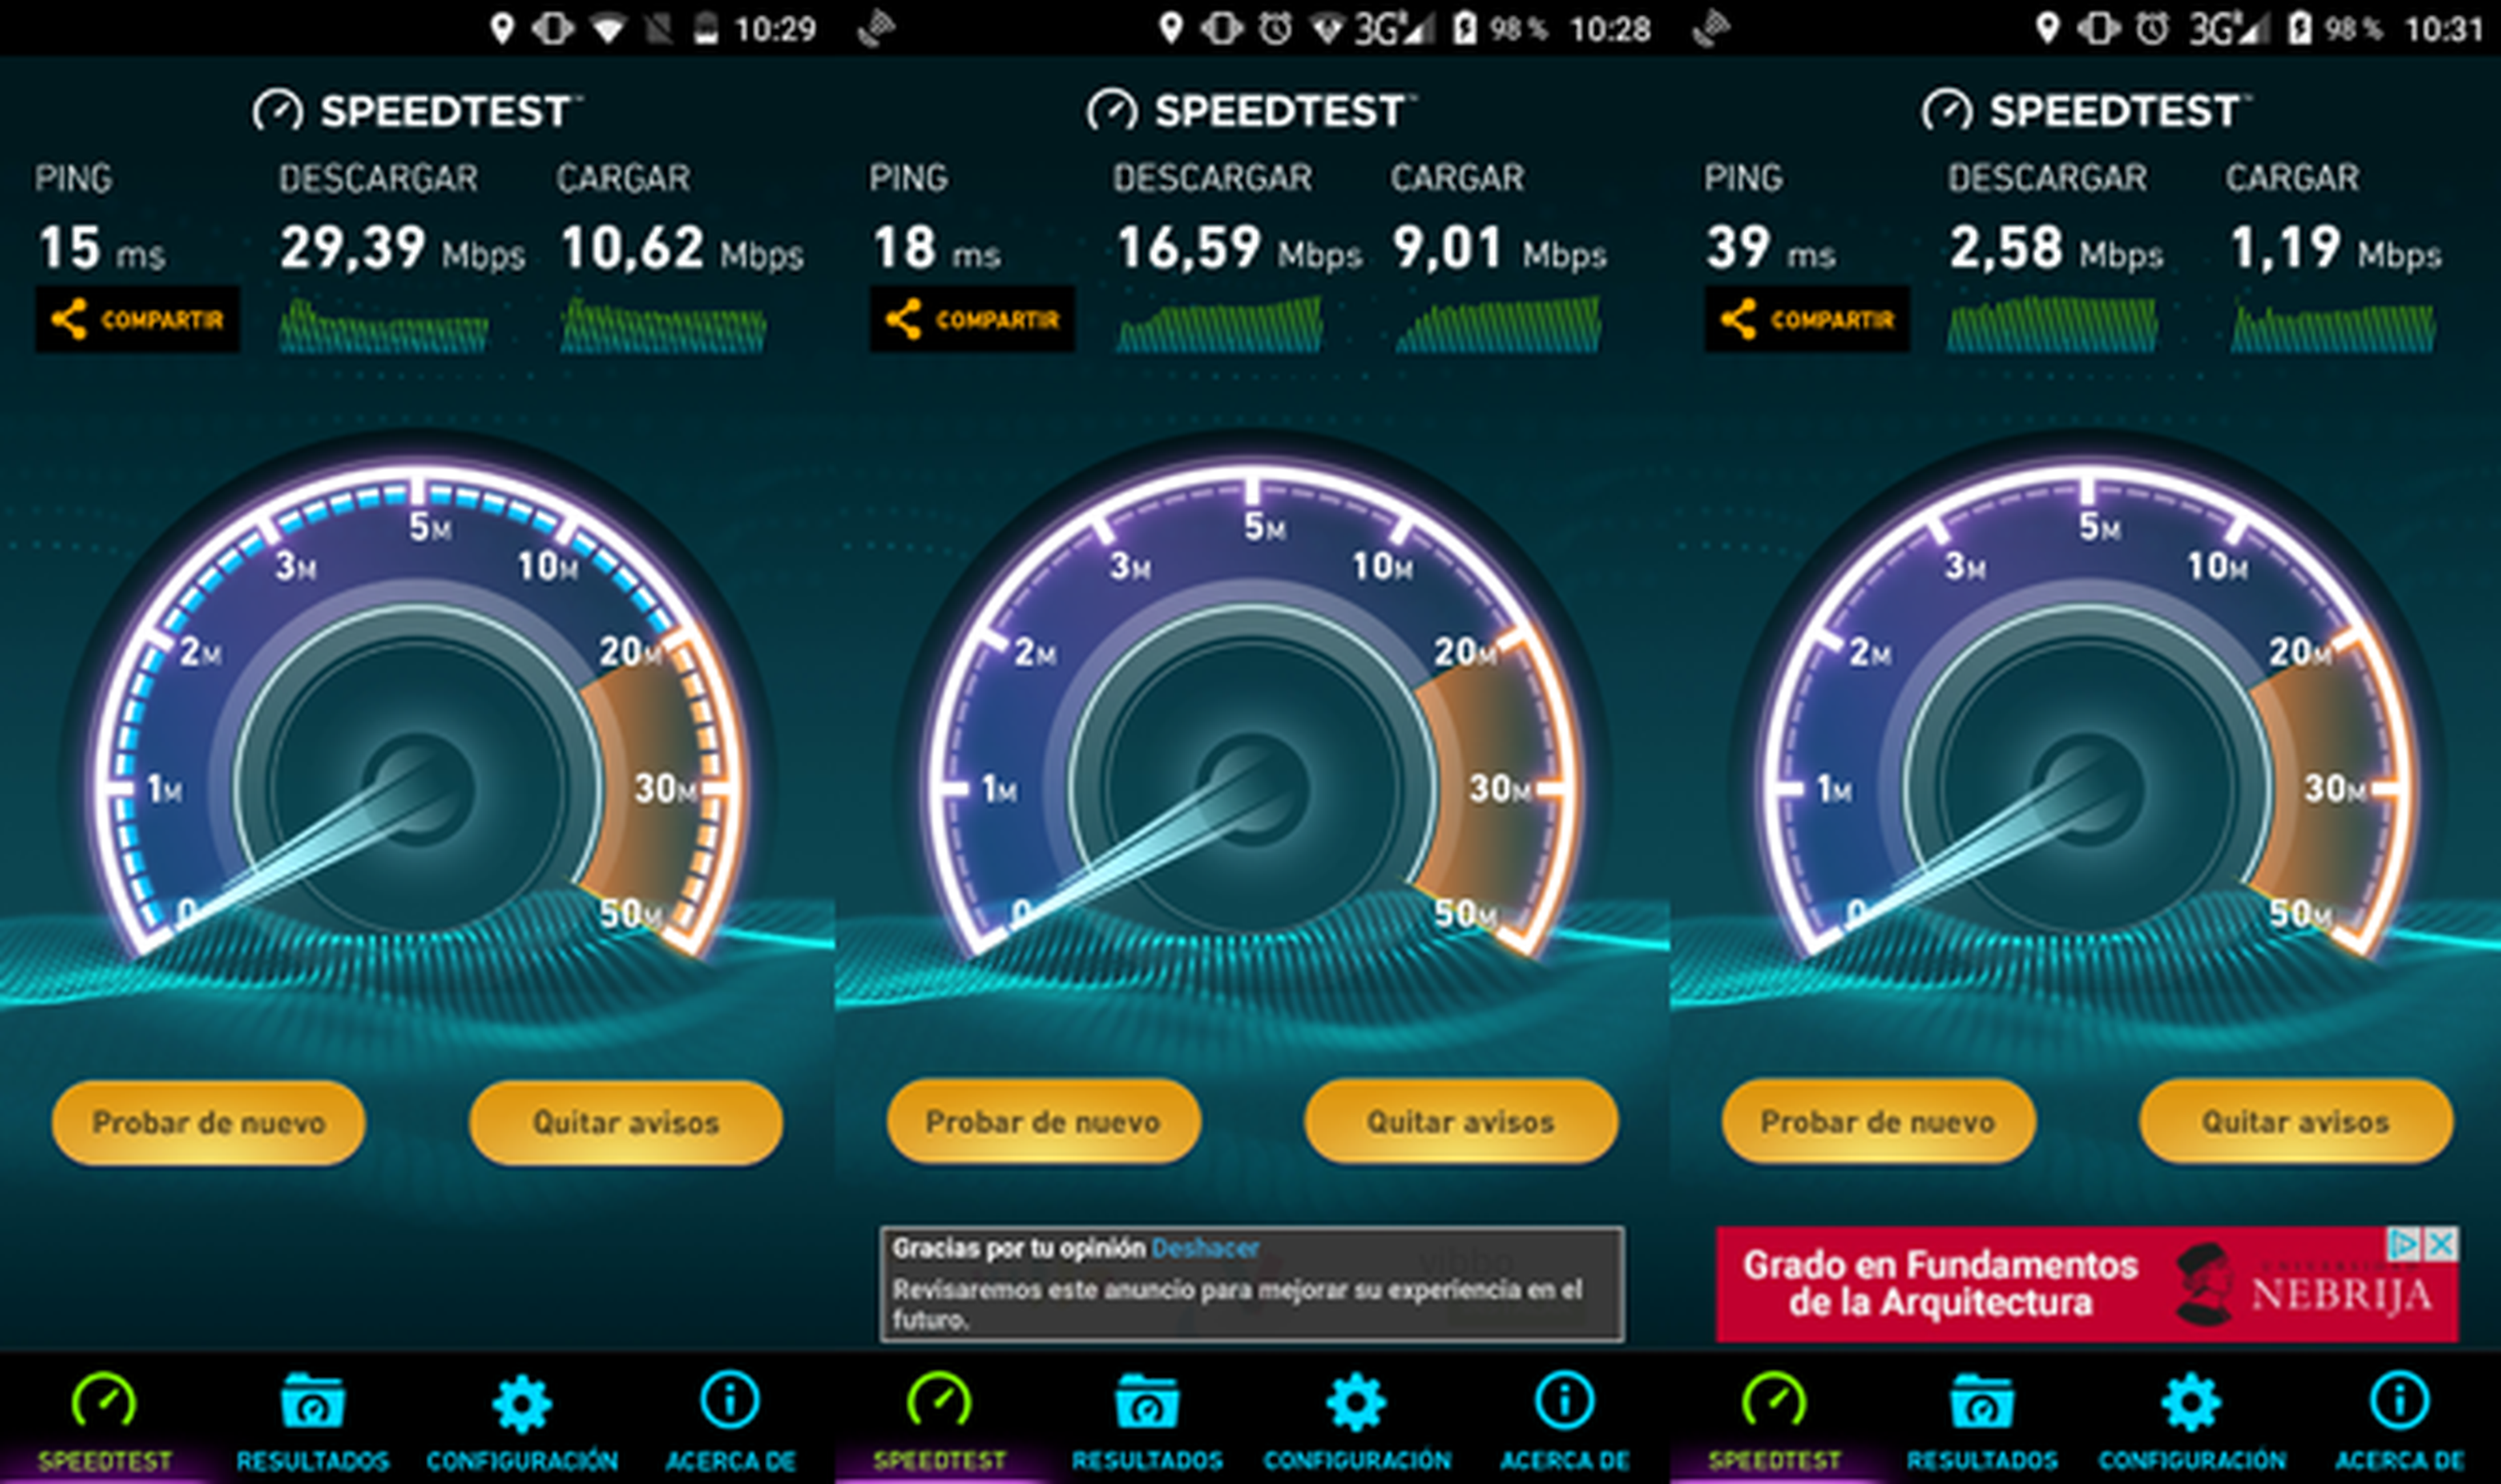 Izquierda: test de velocidad WiFi con otro terminal. Centro: test de velocidad WiFi con Bluboo Maya. Derecha: test de velocidad 3G con Bluboo Maya